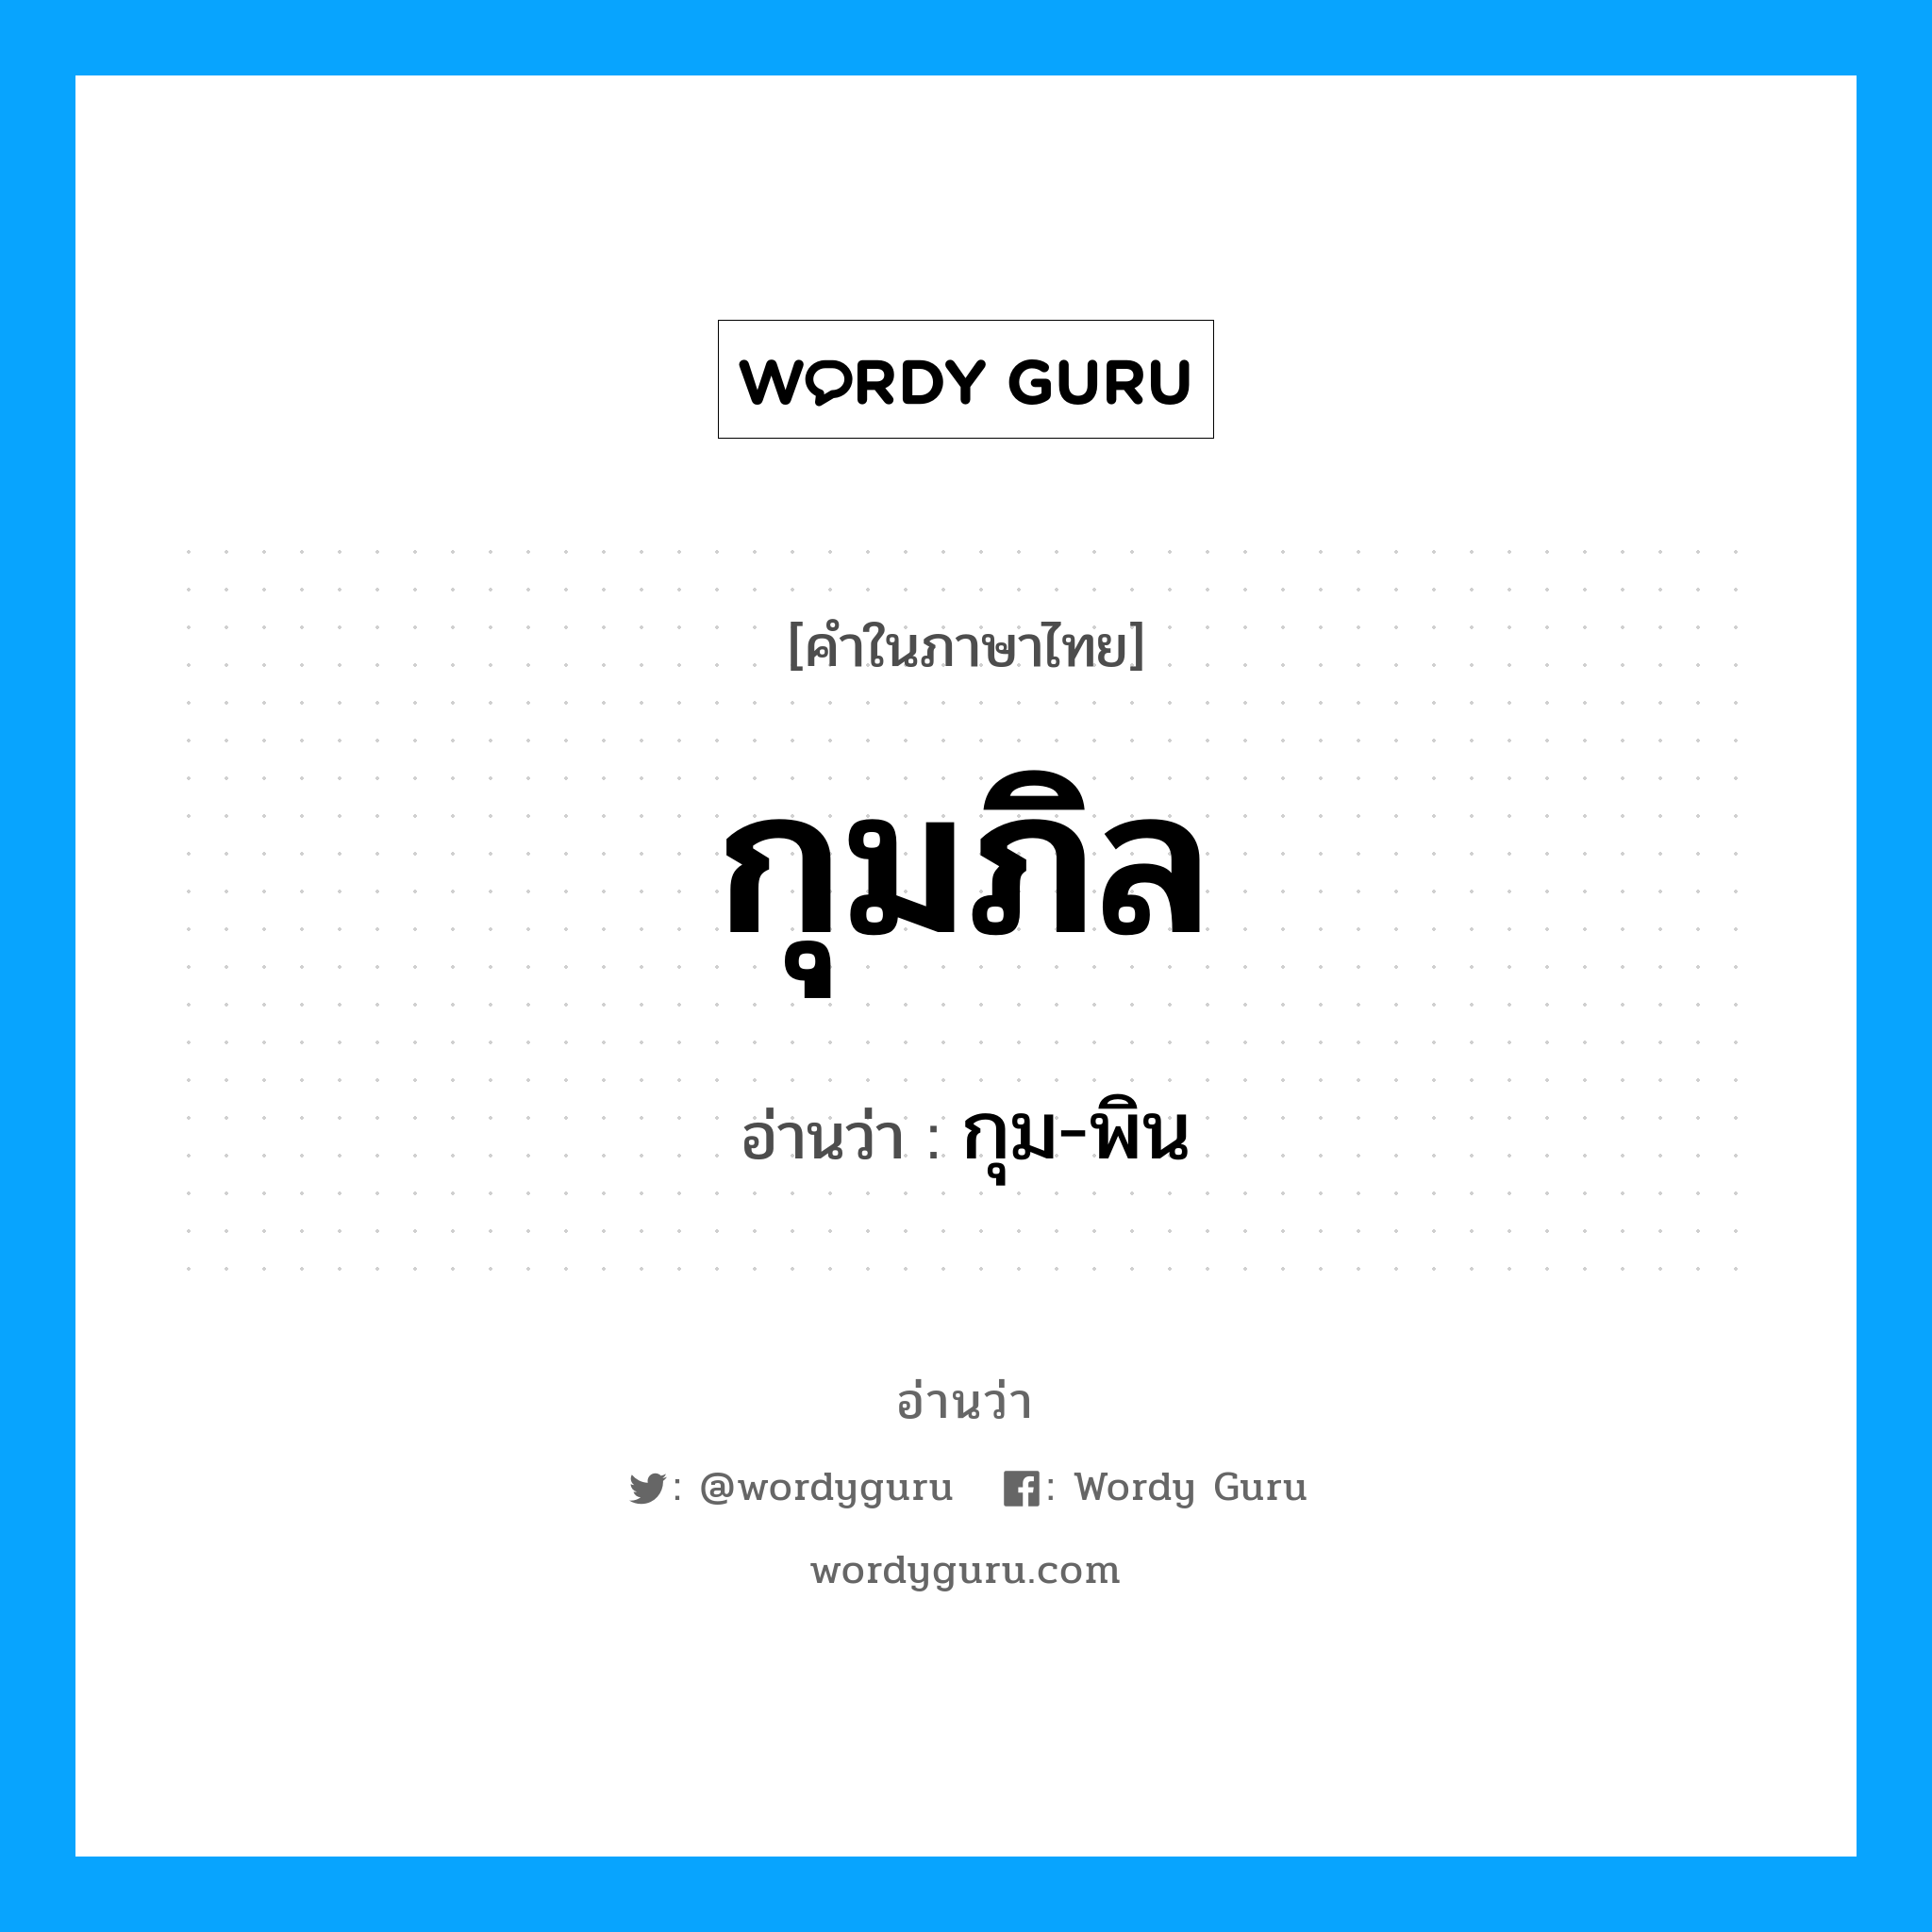 กุม-พิน เป็นคำอ่านของคำไหน?, คำในภาษาไทย กุม-พิน อ่านว่า กุมภิล